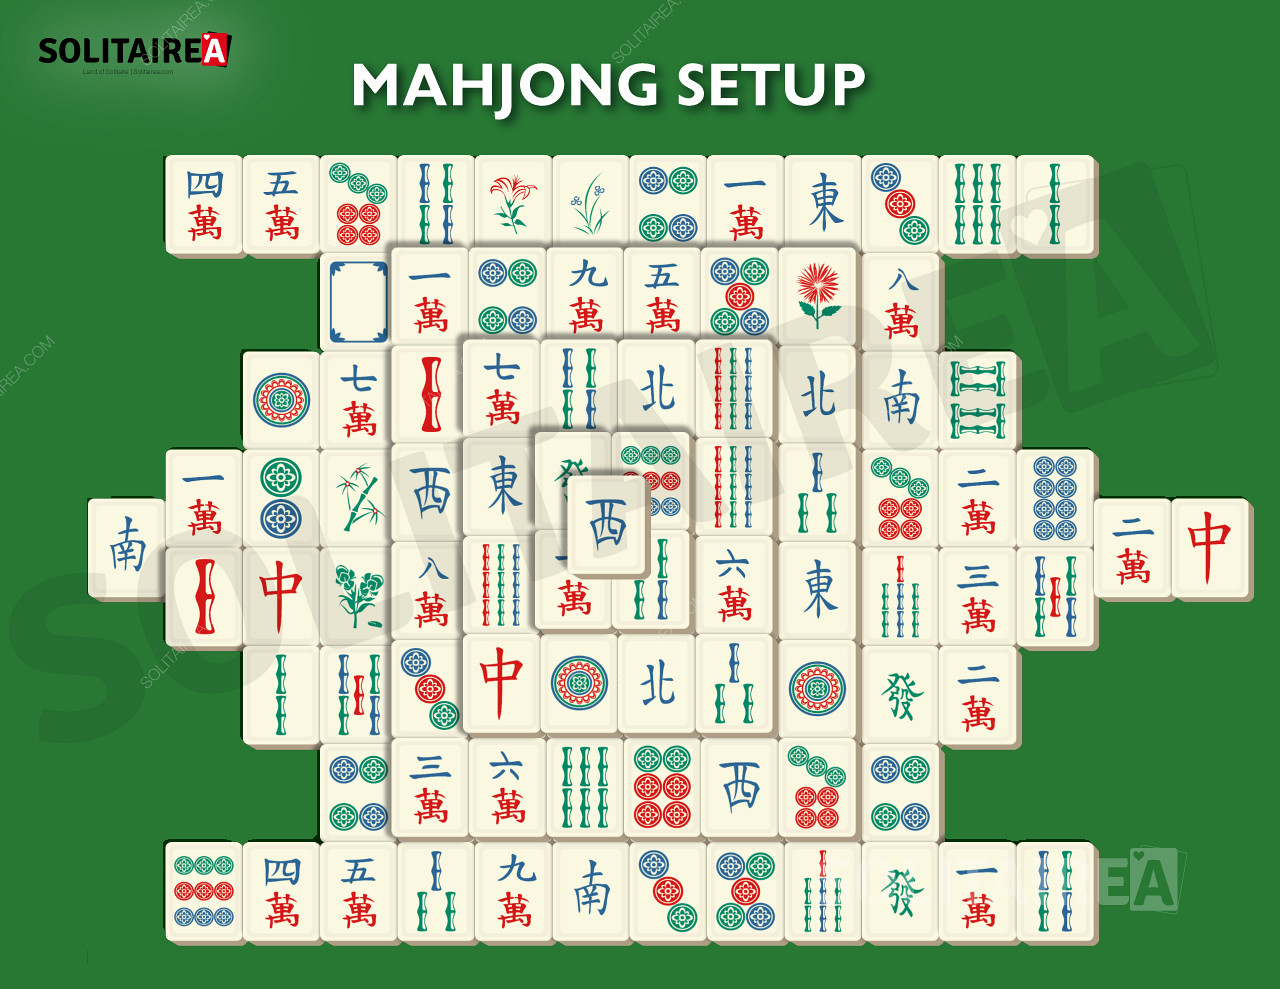 Εικόνα που δείχνει πώς μοιάζει η εγκατάσταση του Mahjong Solitaire.